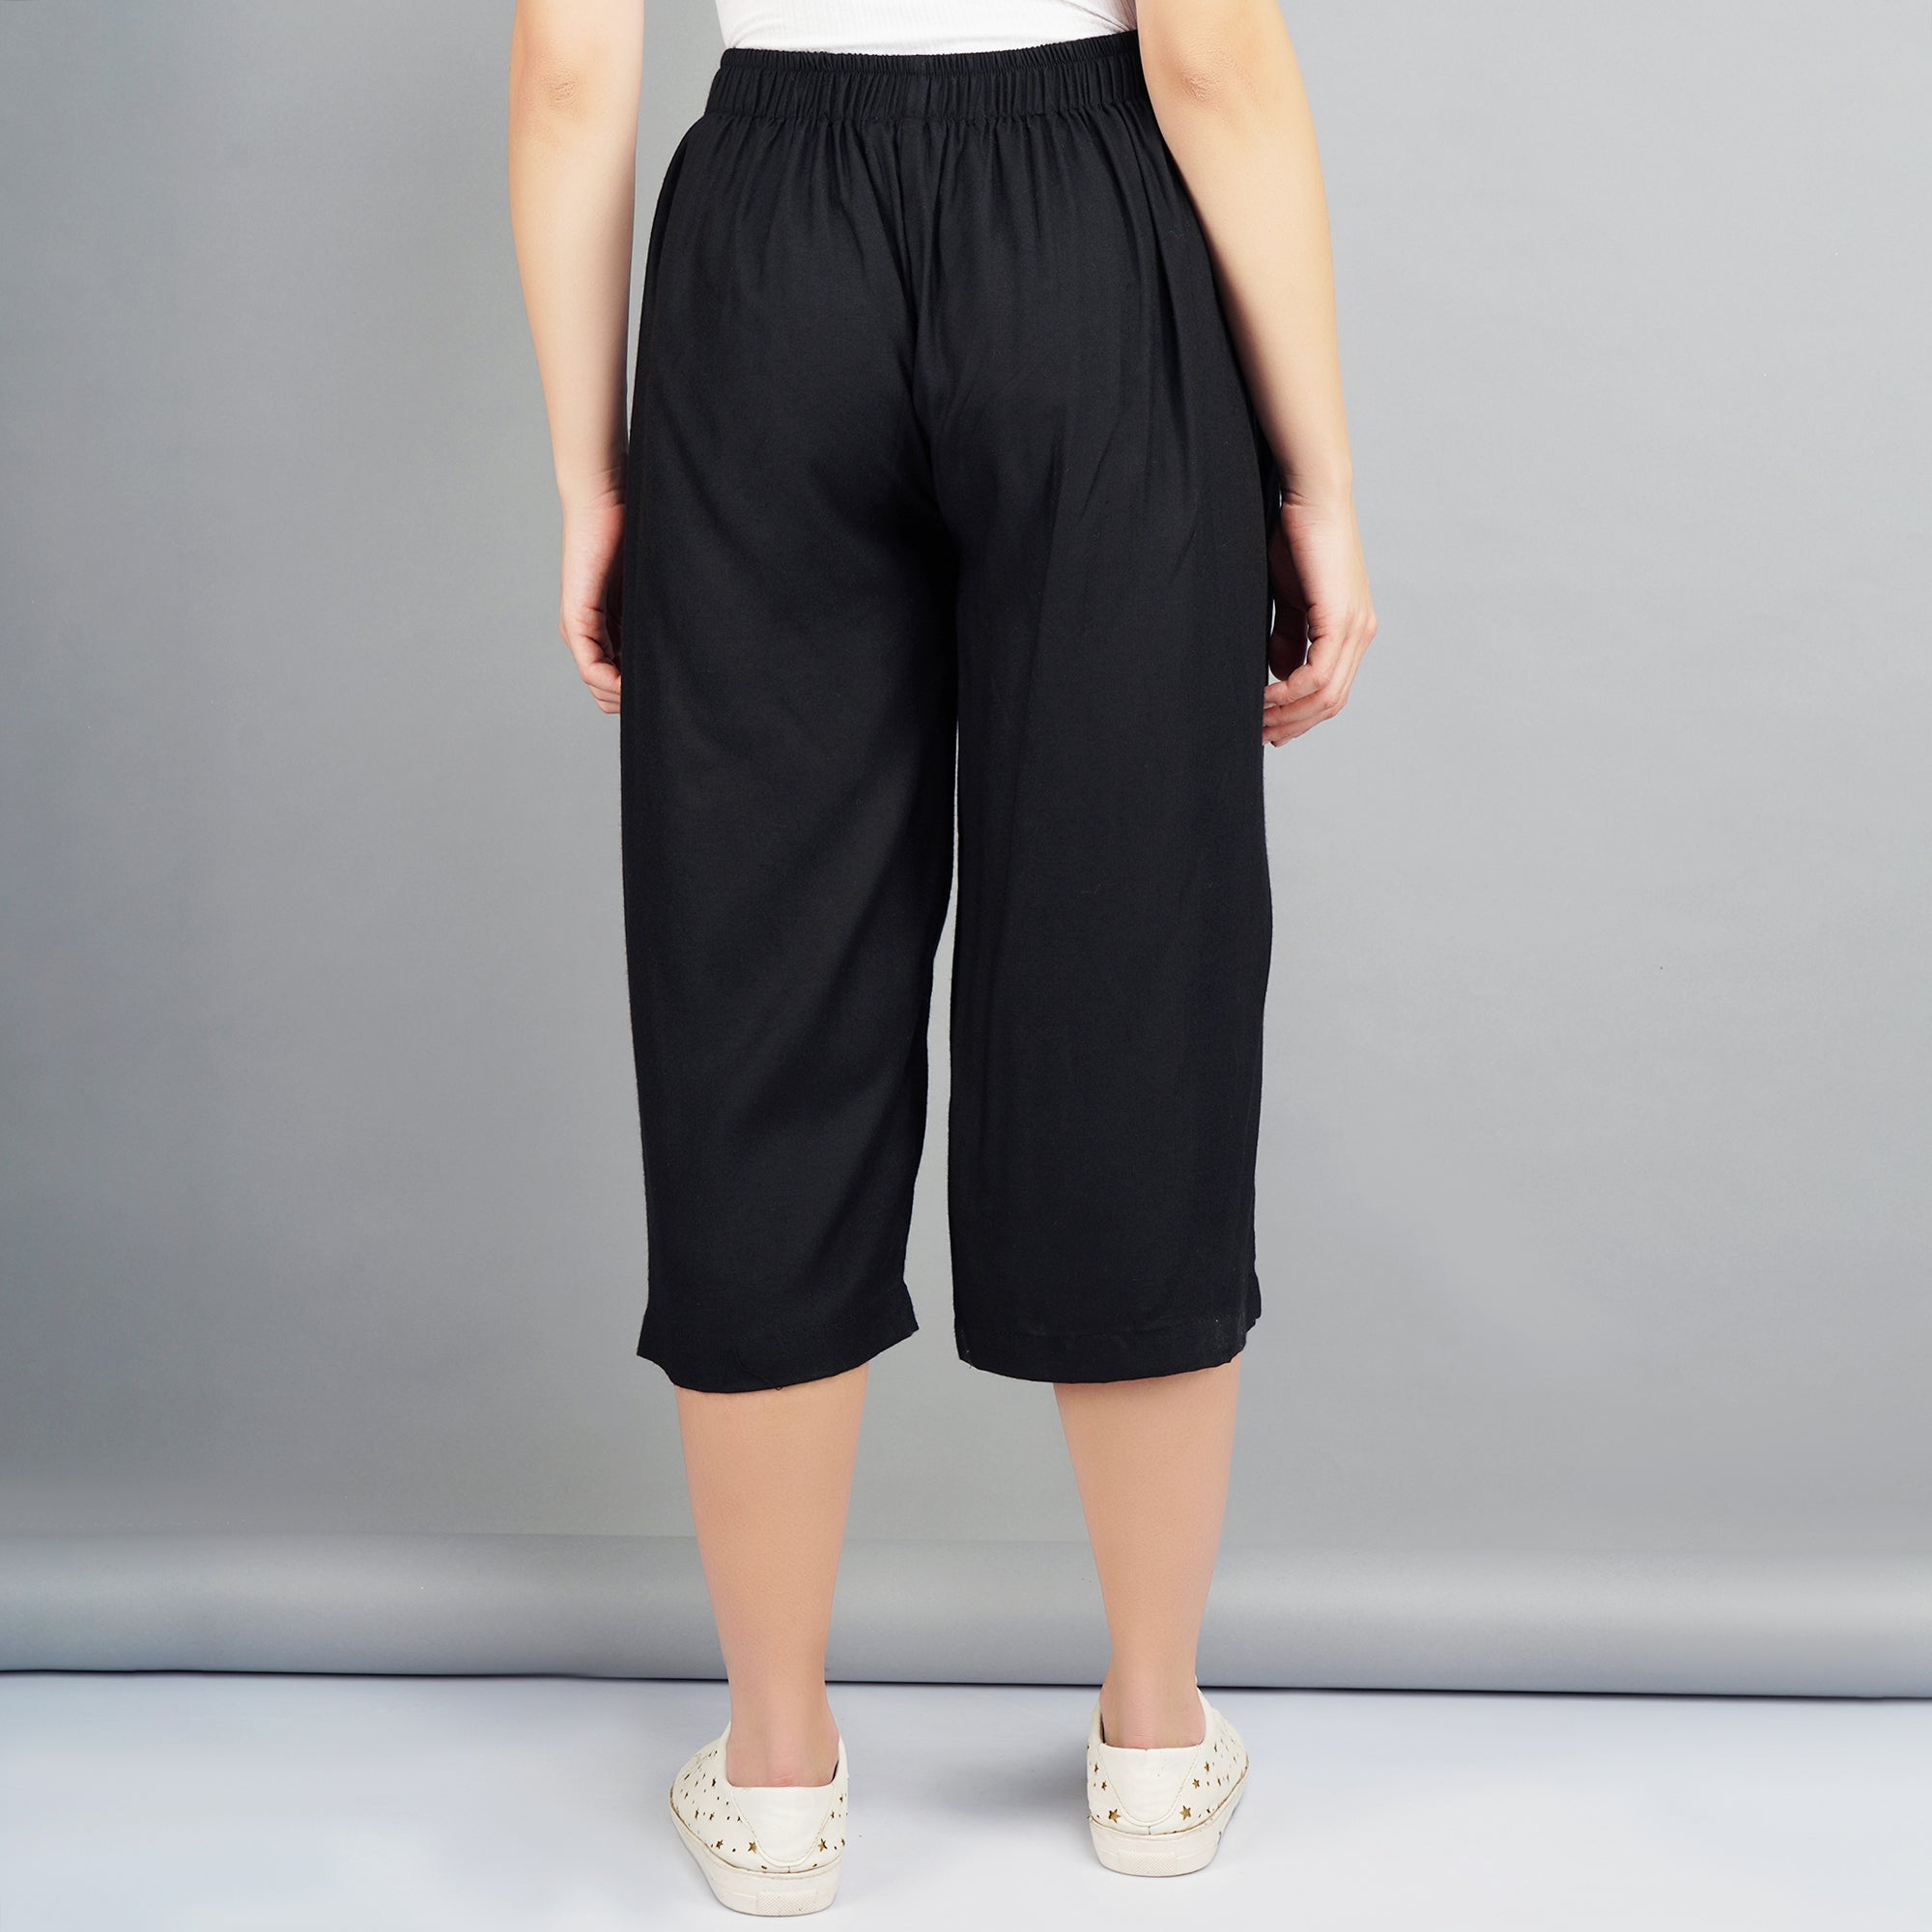 Buy Black Trousers  Pants for Women by SHEREEN Online  Ajiocom